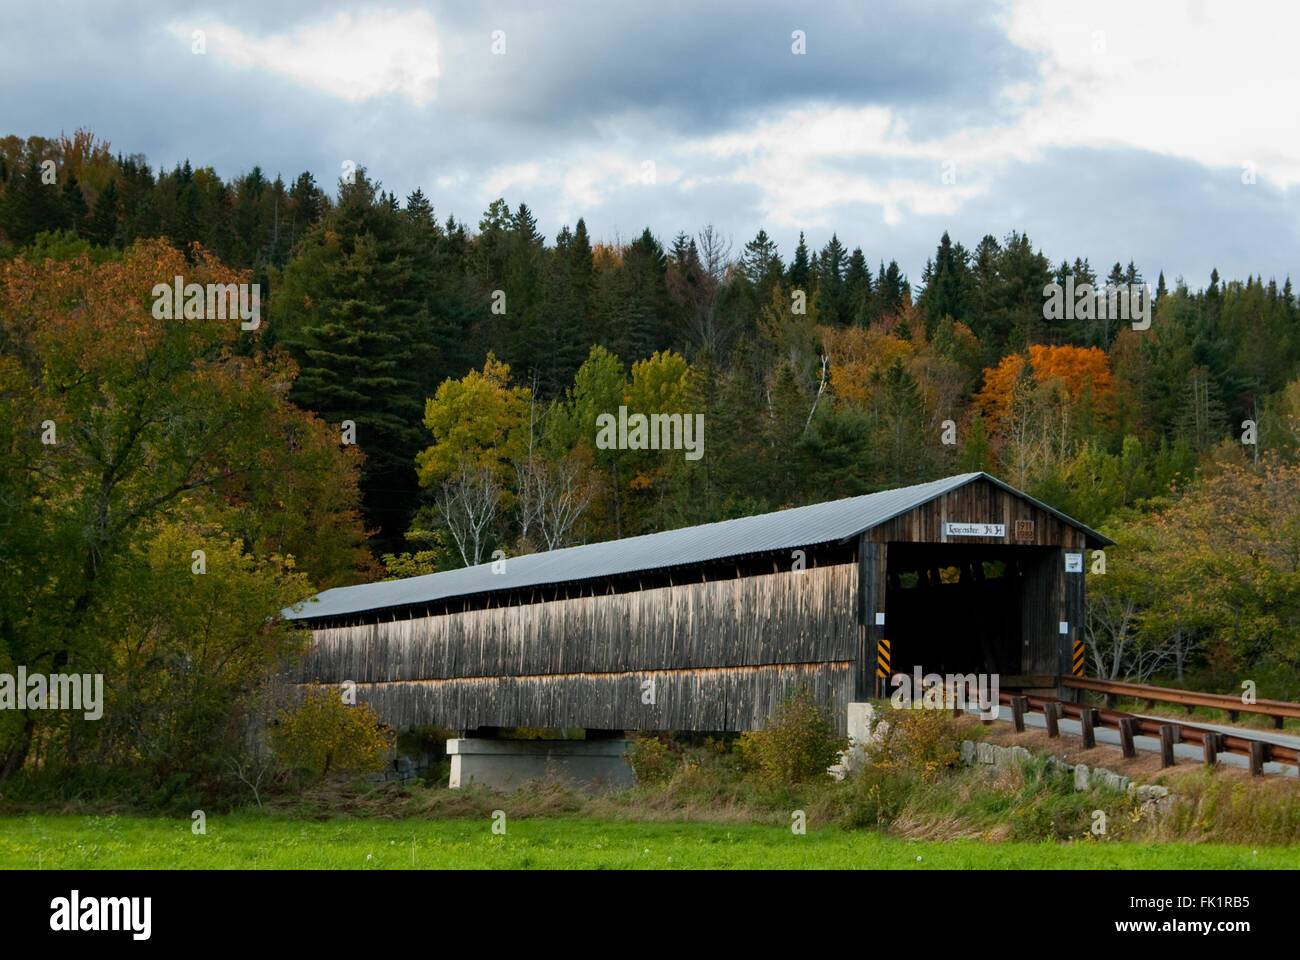 Vieux pont couvert en bois en face du Mont Orne dans le New Hampshire sur l'automne une journée nuageuse. Ponts couverts sont familiers des sites à visiter dans la région de la Nouvelle Angleterre. Banque D'Images